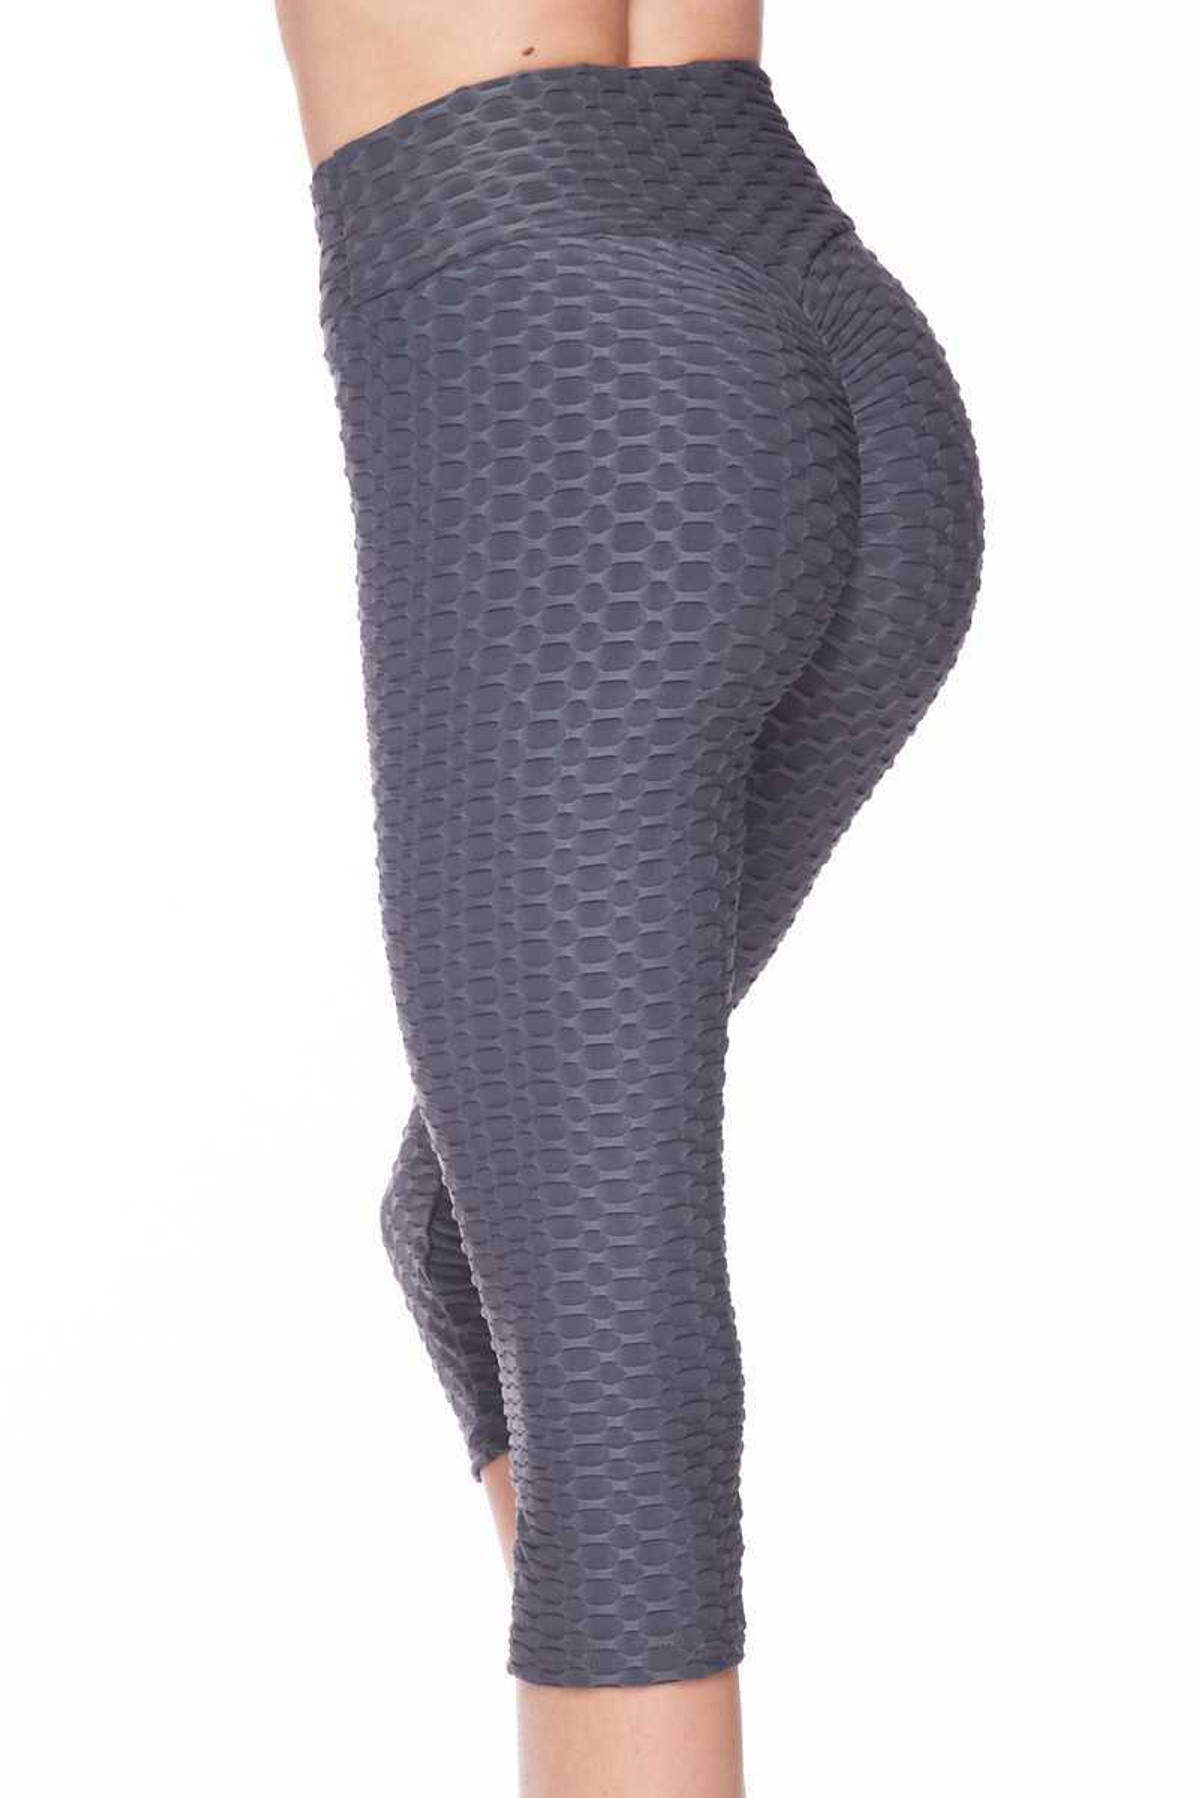 Scrunch Butt Textured High Waisted Plus Size Capris